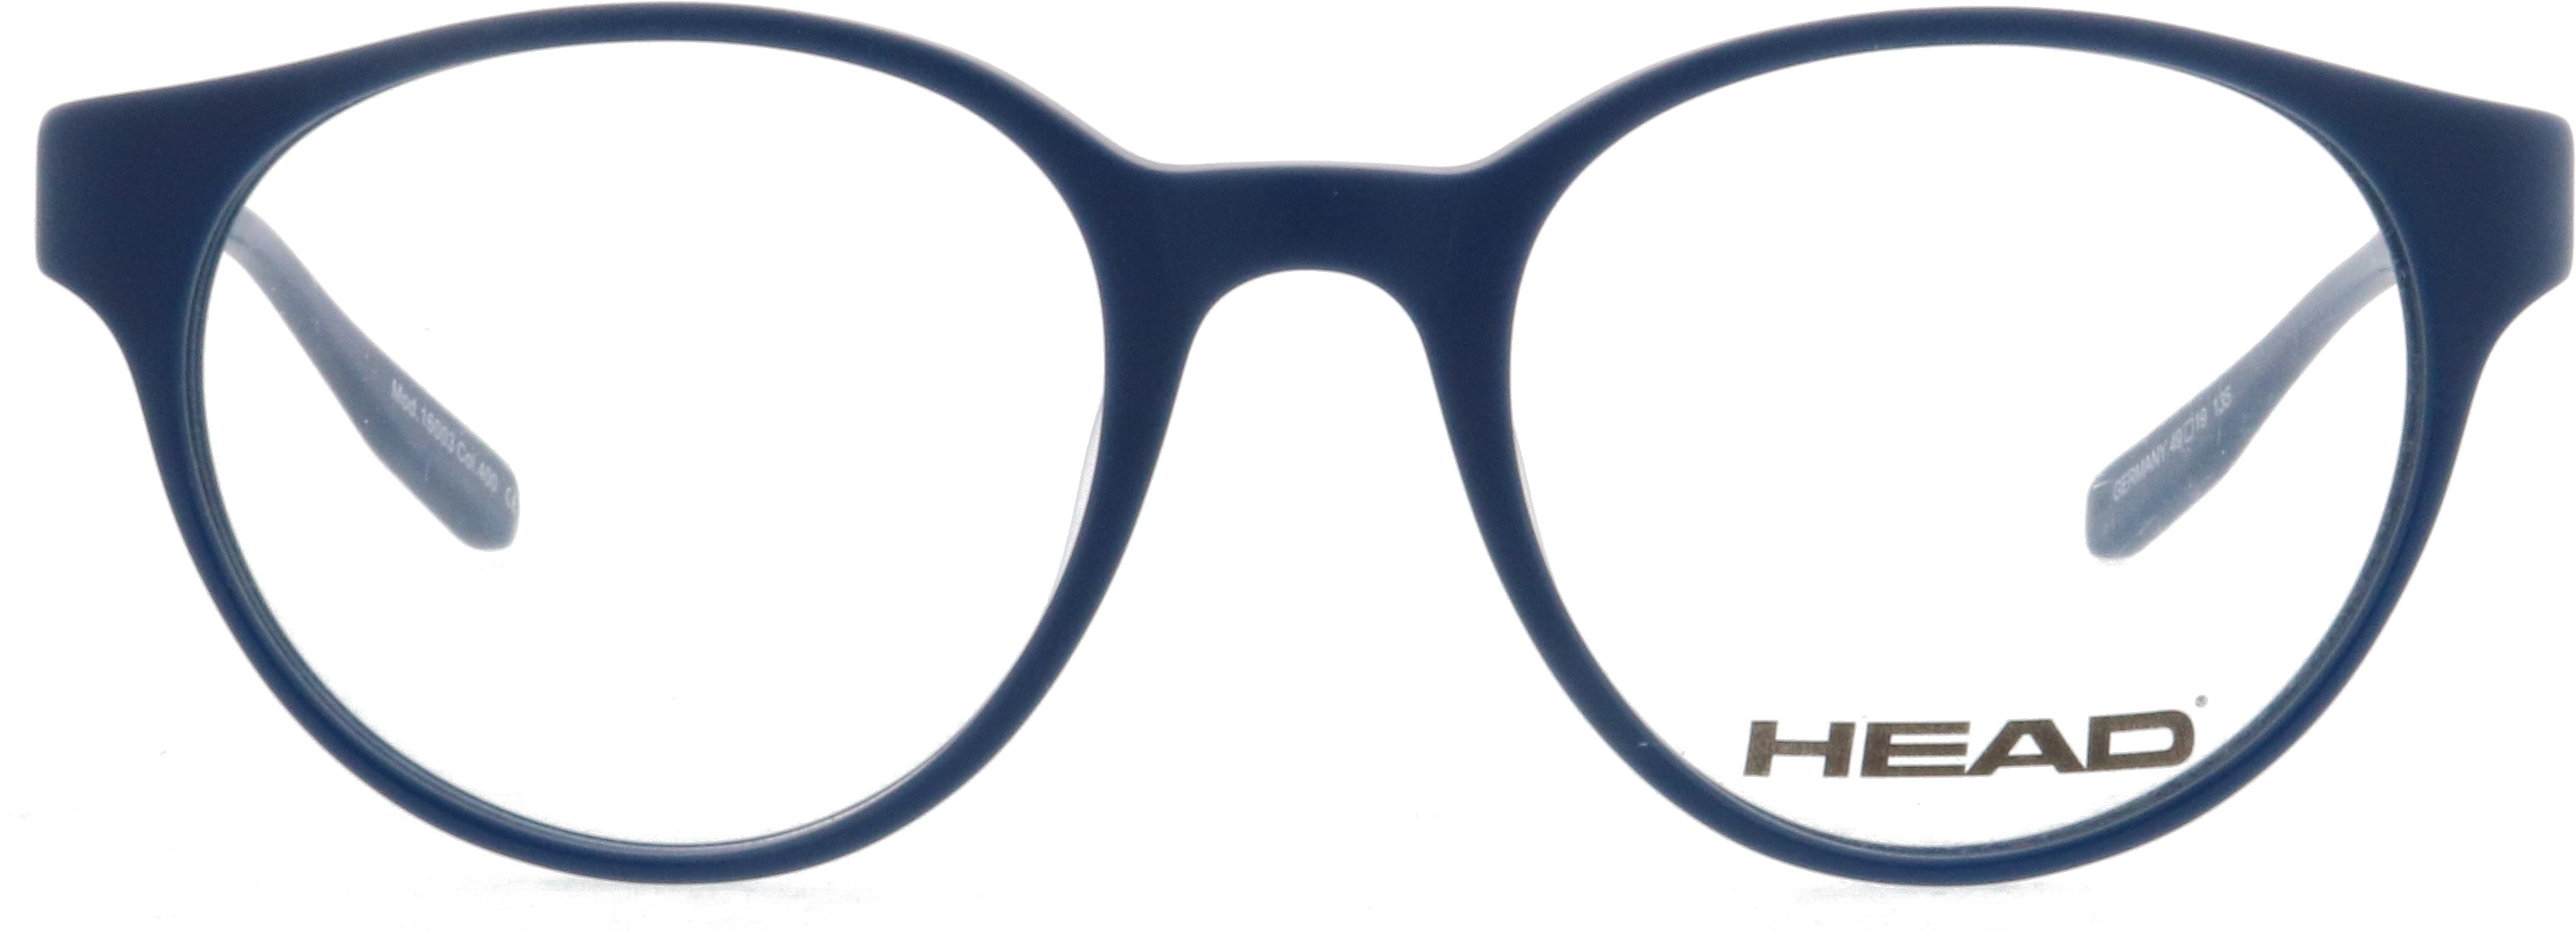 Requisiten Schwarz runder Rahmen Brain Game WOQOOK Kunststoff-Brille mit lustigen Wackelaugen Brille Party-Accessoires 